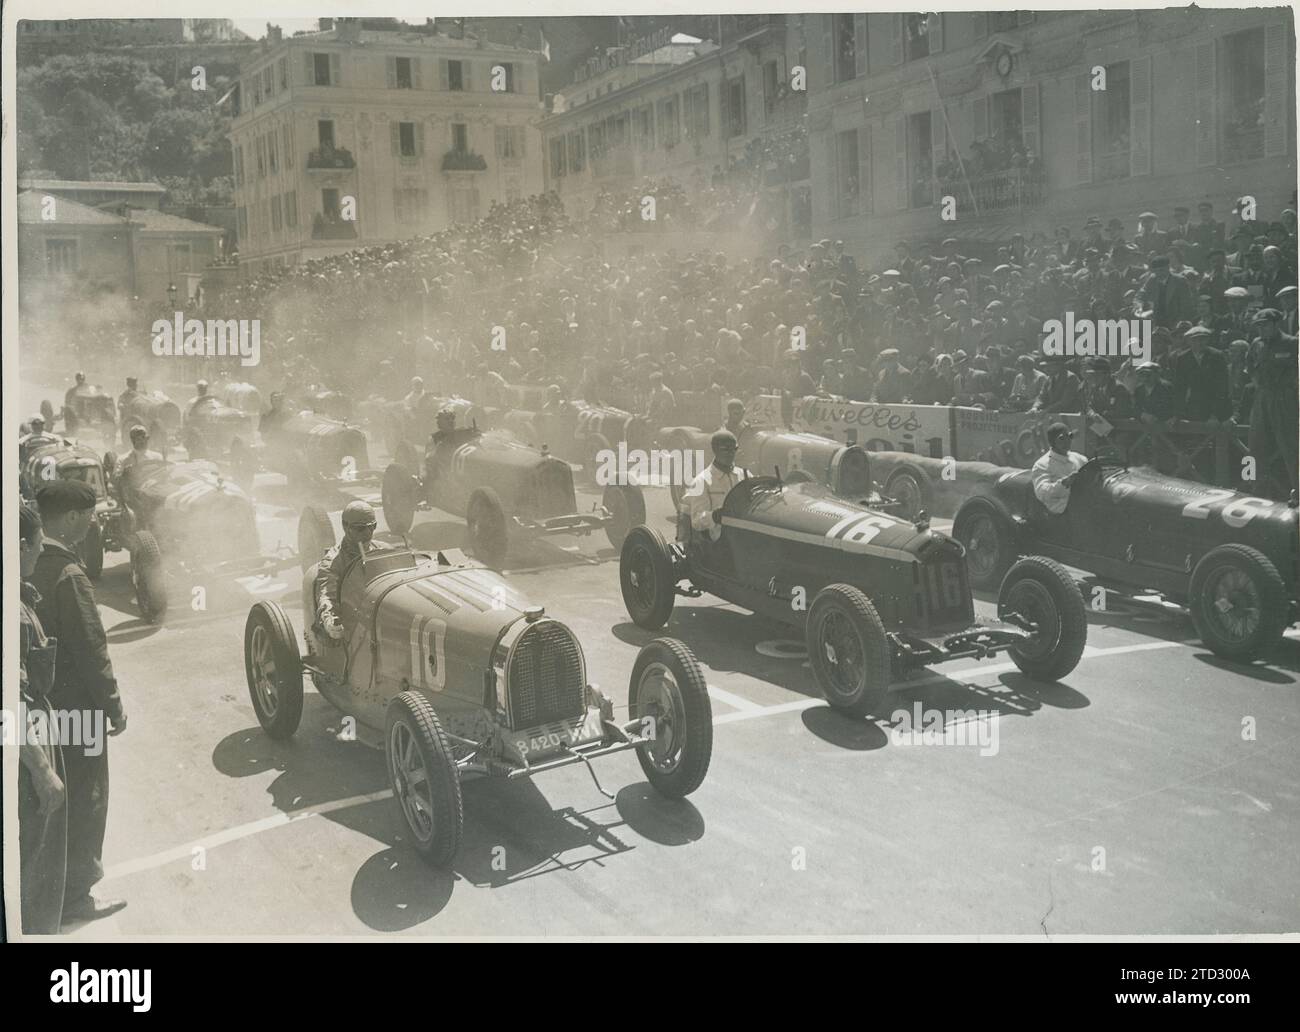 Monaco, 04/23/1933. Grand Prix de Monaco. Moment du départ avec les pilotes, de gauche à droite, Achille Varzi, Louis Chiron et Baconin Borzacchini. Crédit : Album / Archivo ABC Banque D'Images